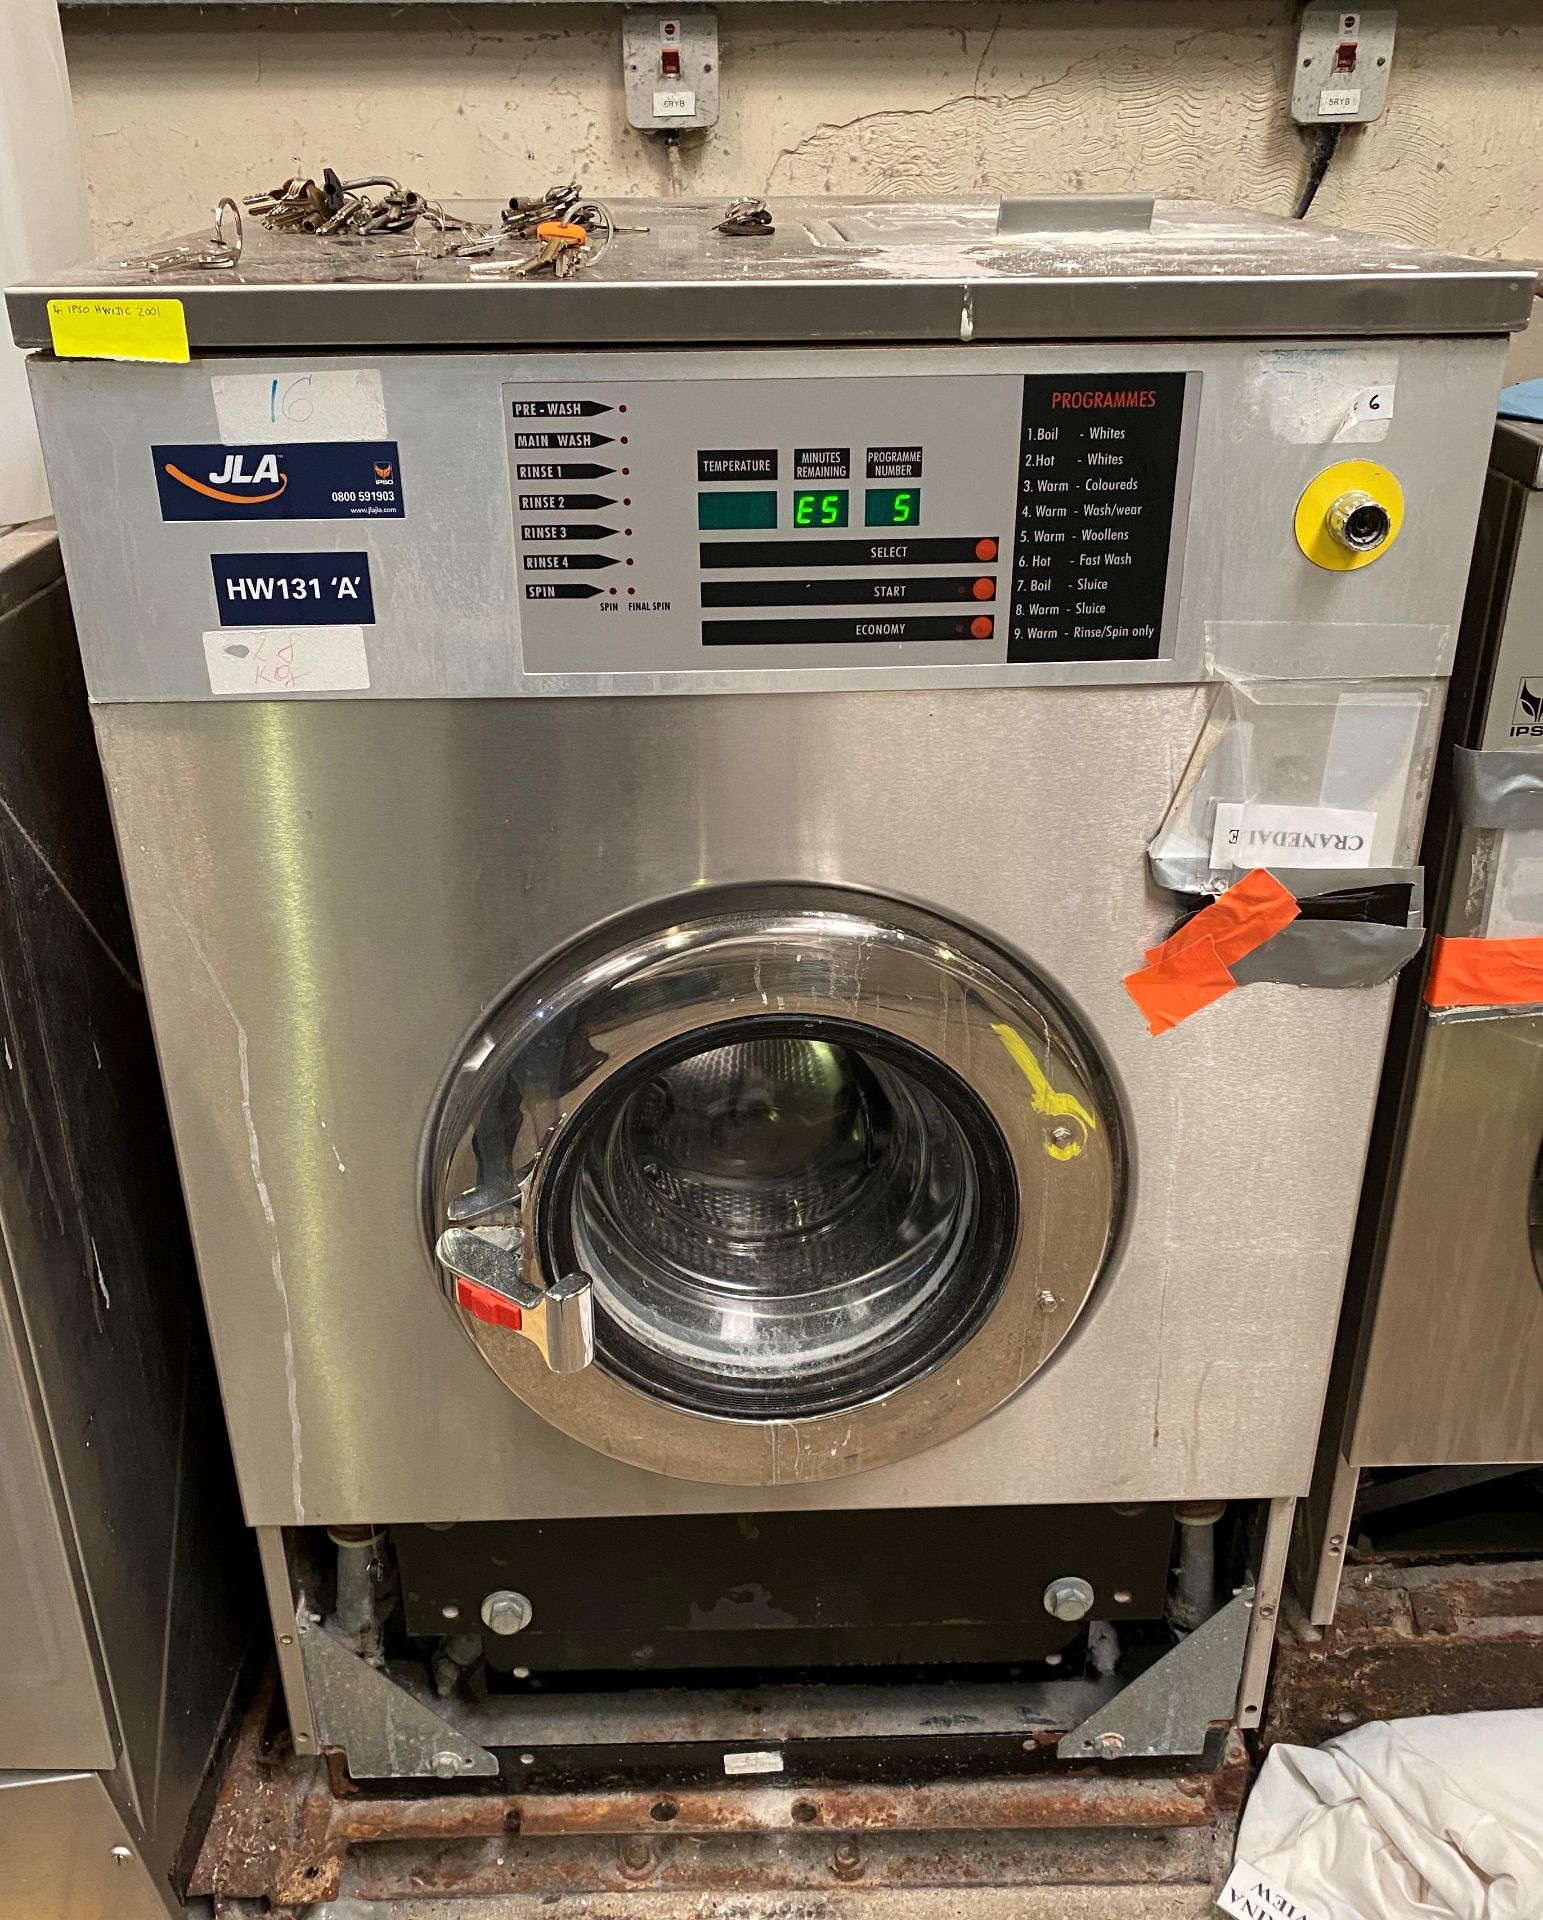 IPSO JLA HW131C Commercial Washing Machine DOM 2001 - 3 phase - Image 2 of 5